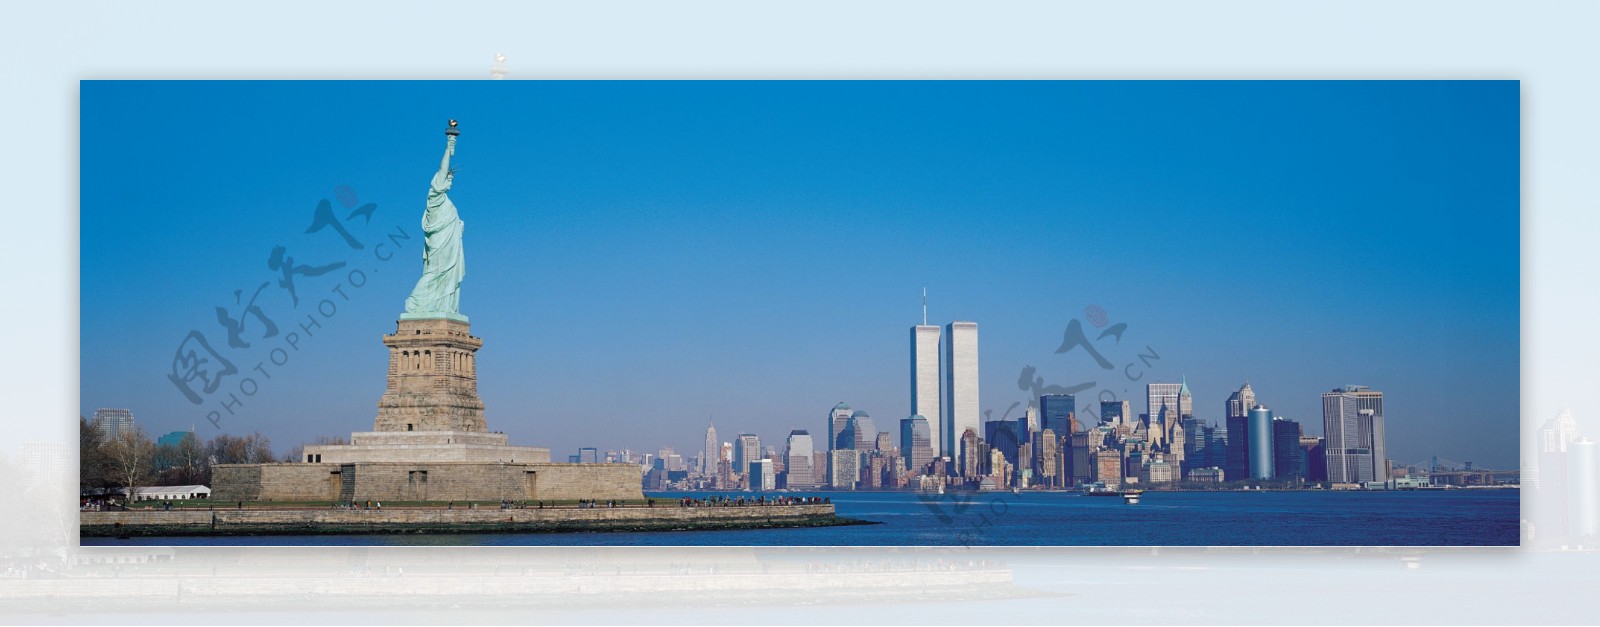 美国自由女神像和世贸大厦双子楼图片